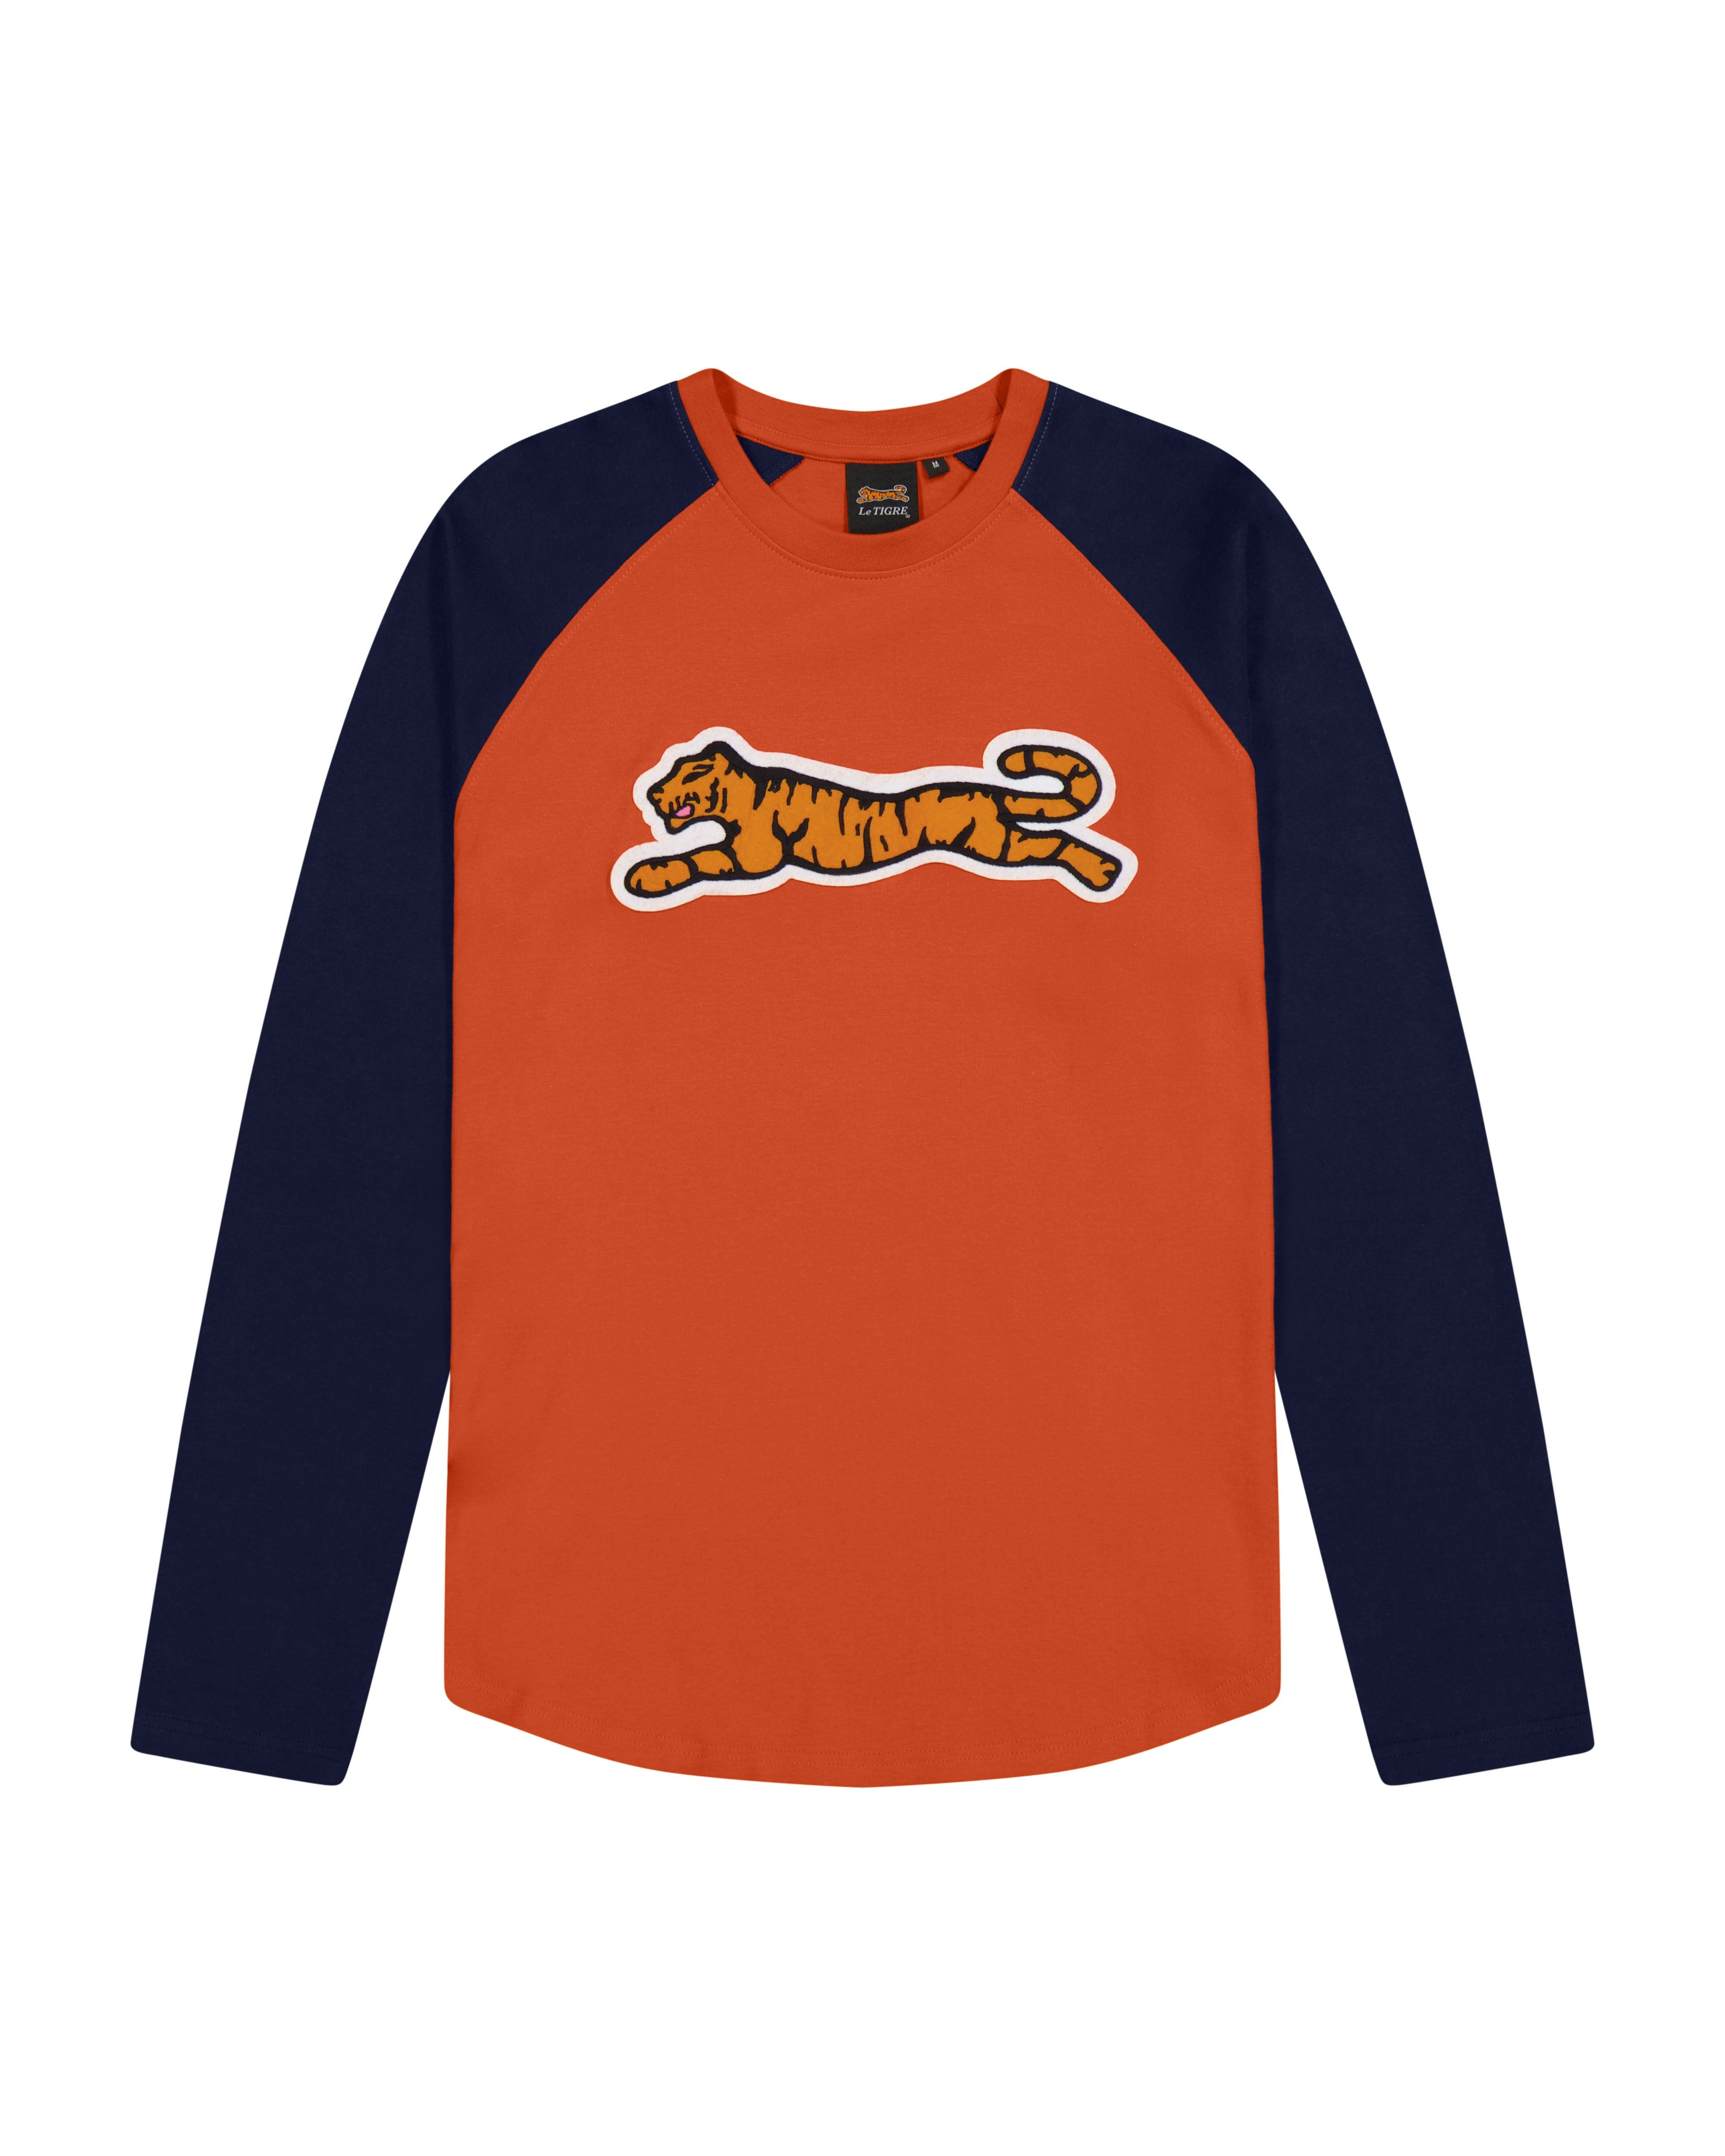 Kenzo Kenzo Tiger T-shirt Navy/Orange